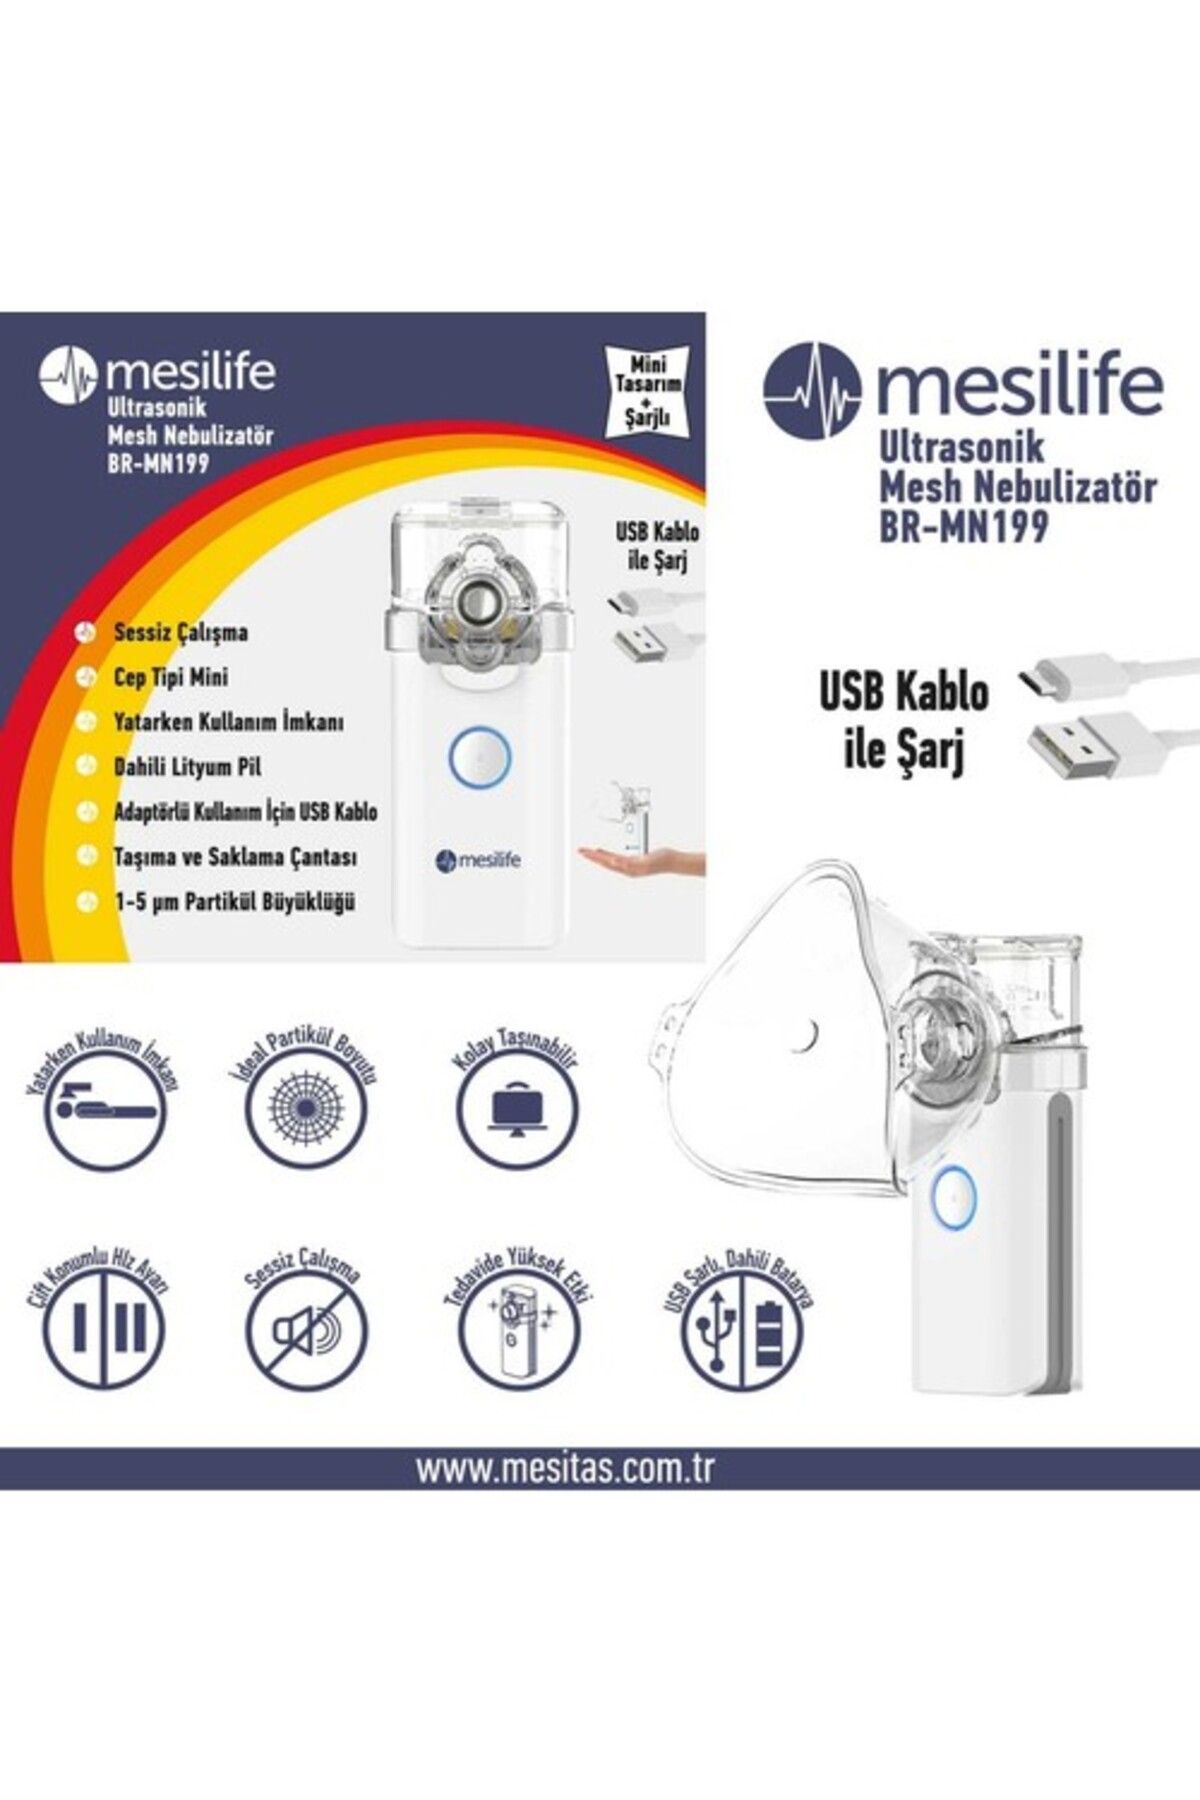 Mesilife Taşınabilir Mini Mesh Nebulizatör Br-mn199 Sessiz Ve Yatarken Kullanım Imkanı